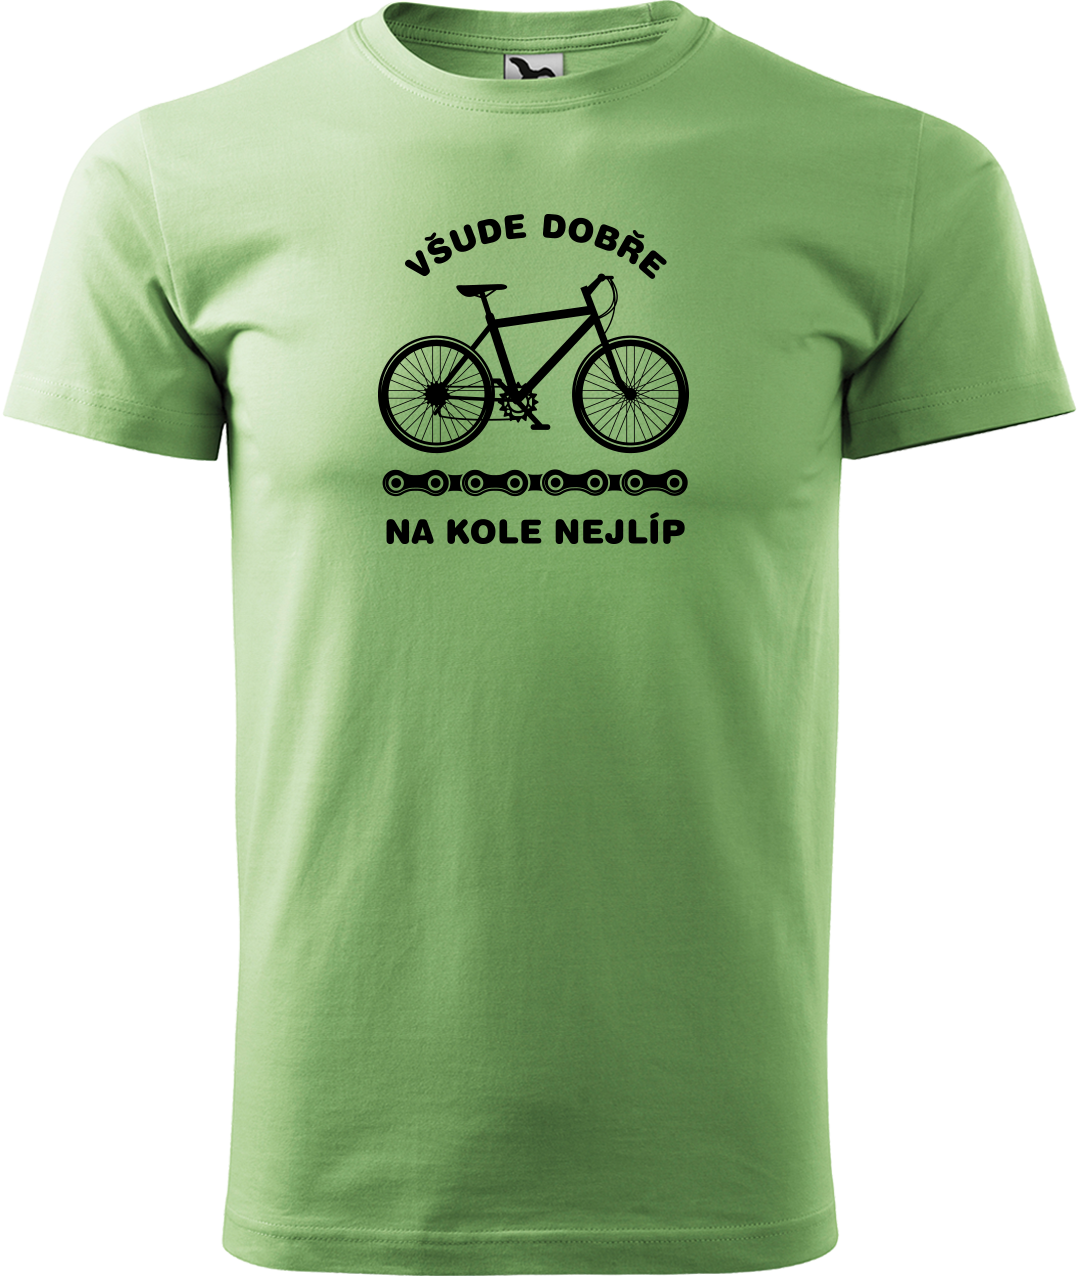 Pánské tričko s kolem - Všude dobře, na kole nejlíp Velikost: 3XL, Barva: Trávově zelená (39)